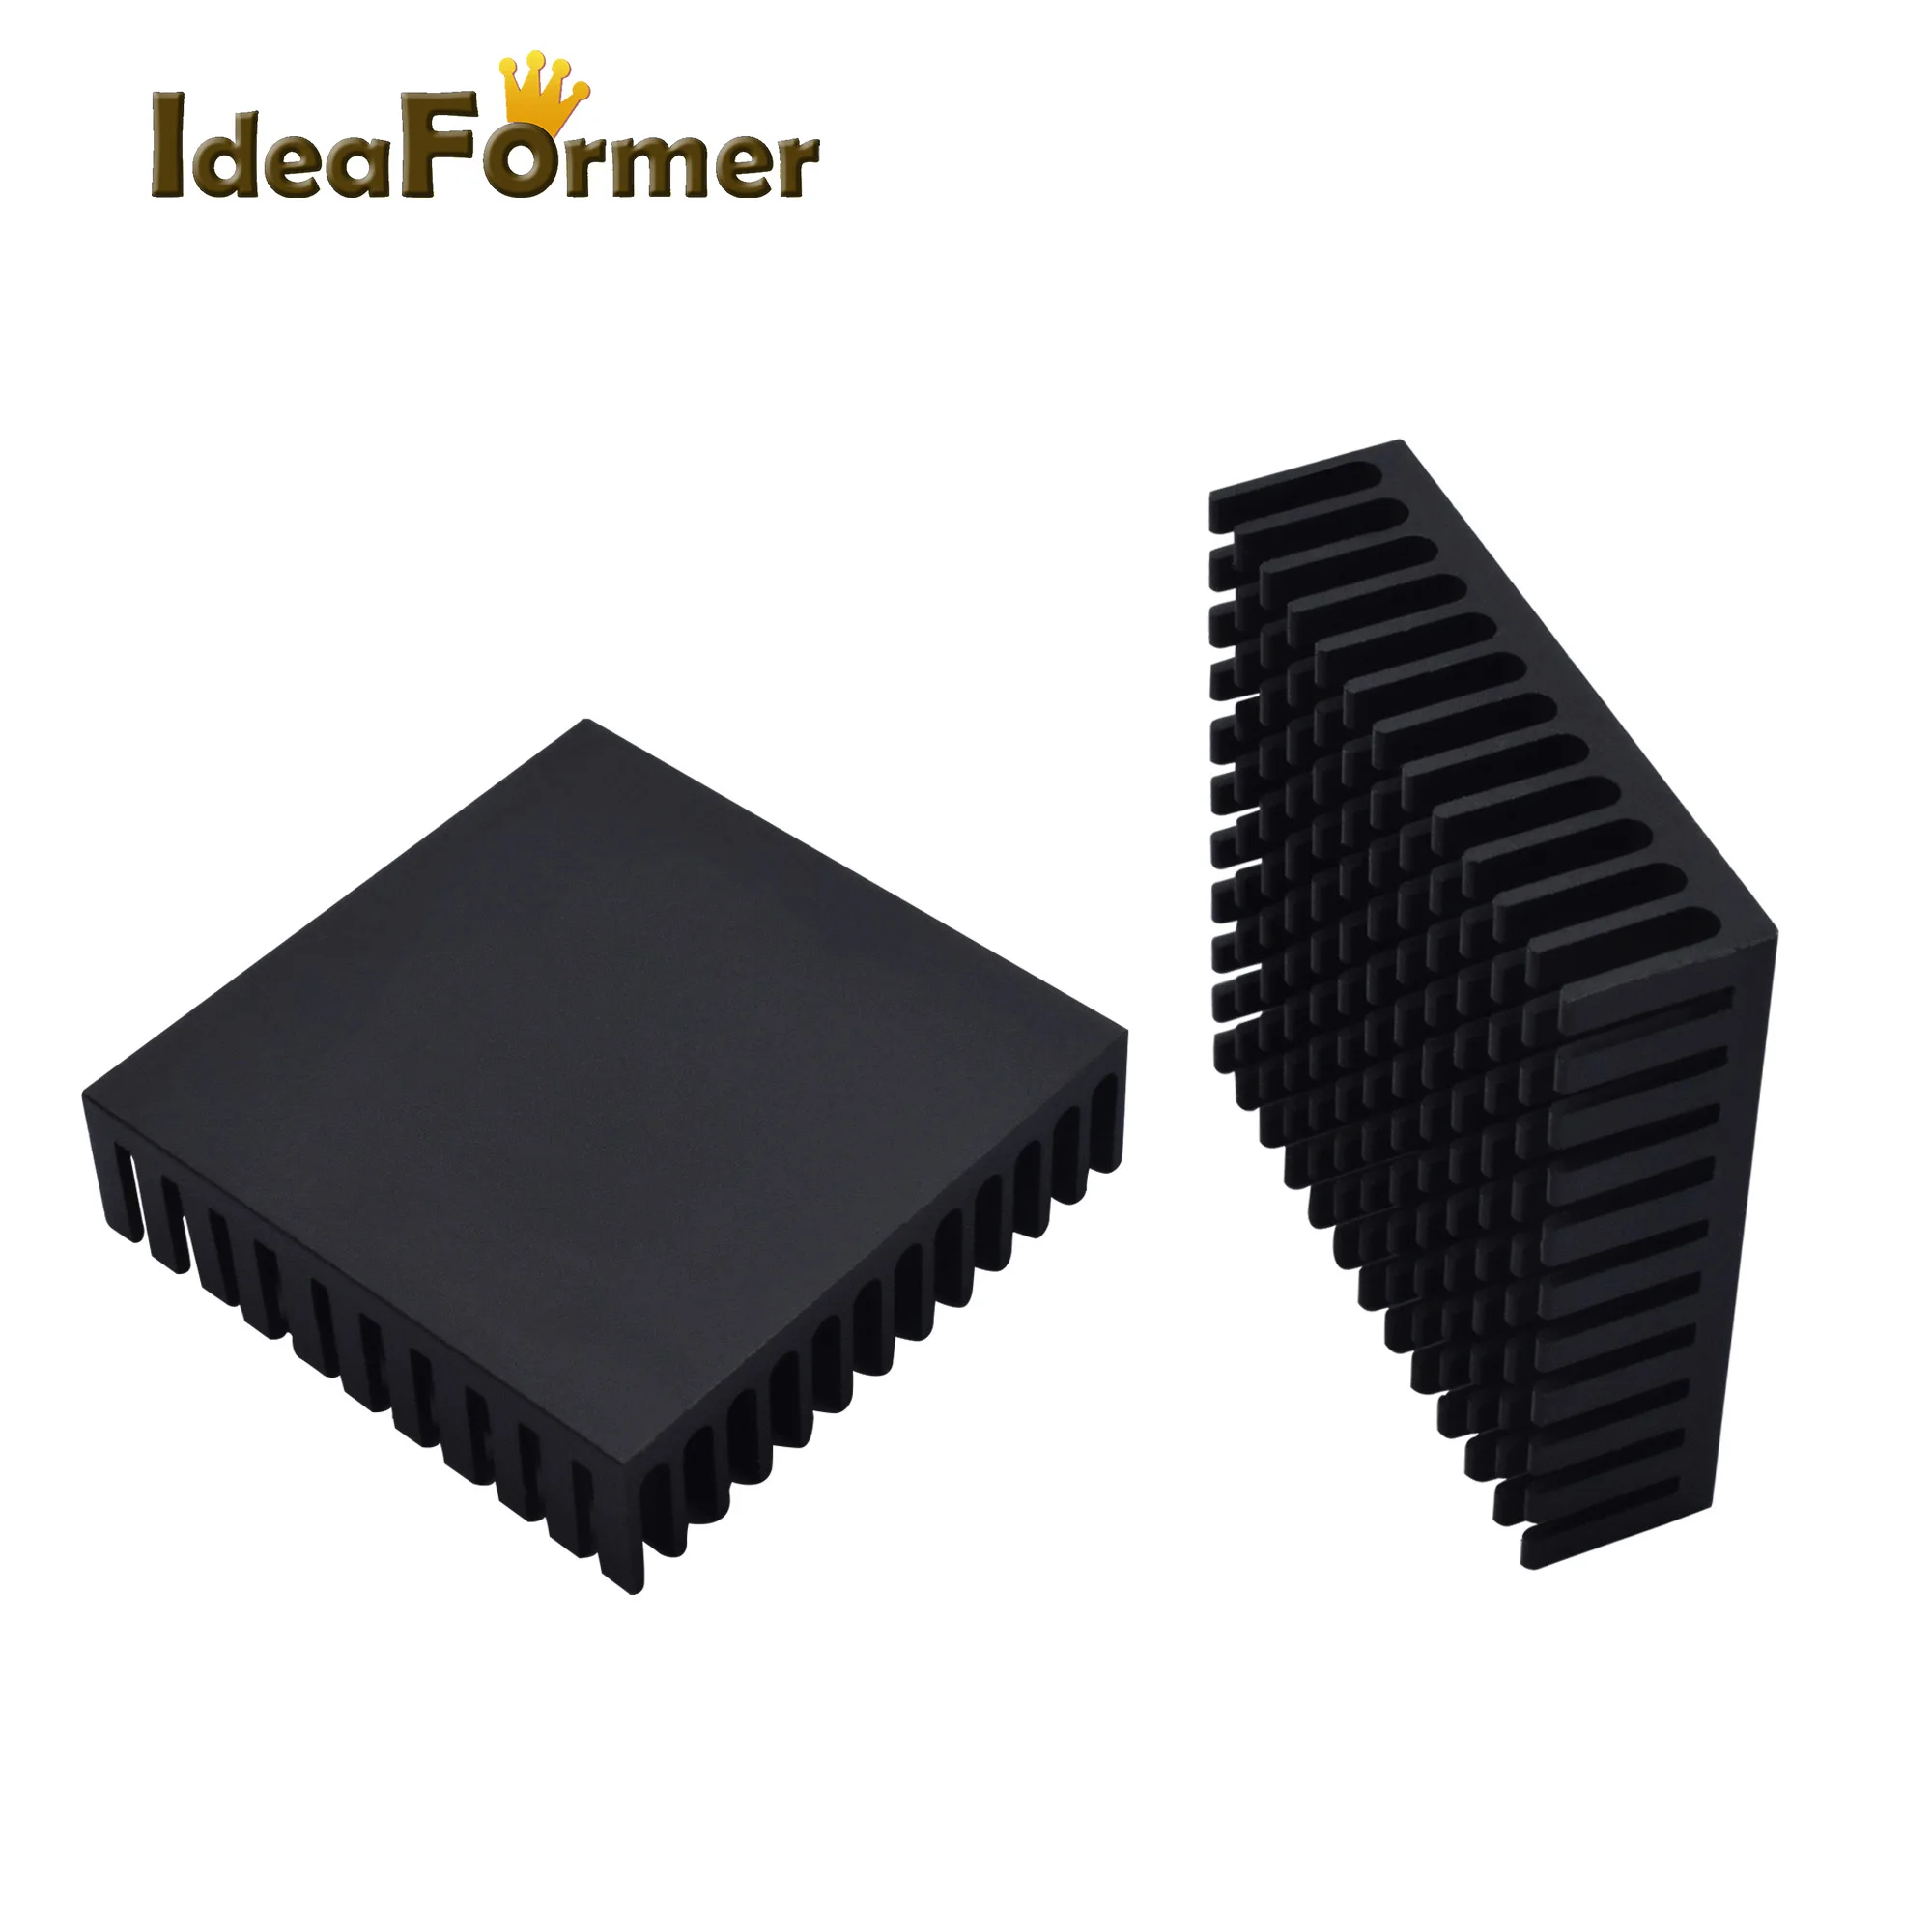 NEMA 17 шаговый демпфер мука и Резина шаговый двигатель Вибрационный демпфер nema 17 импортный подлинный амортизатор для 3D-принтера запчасти